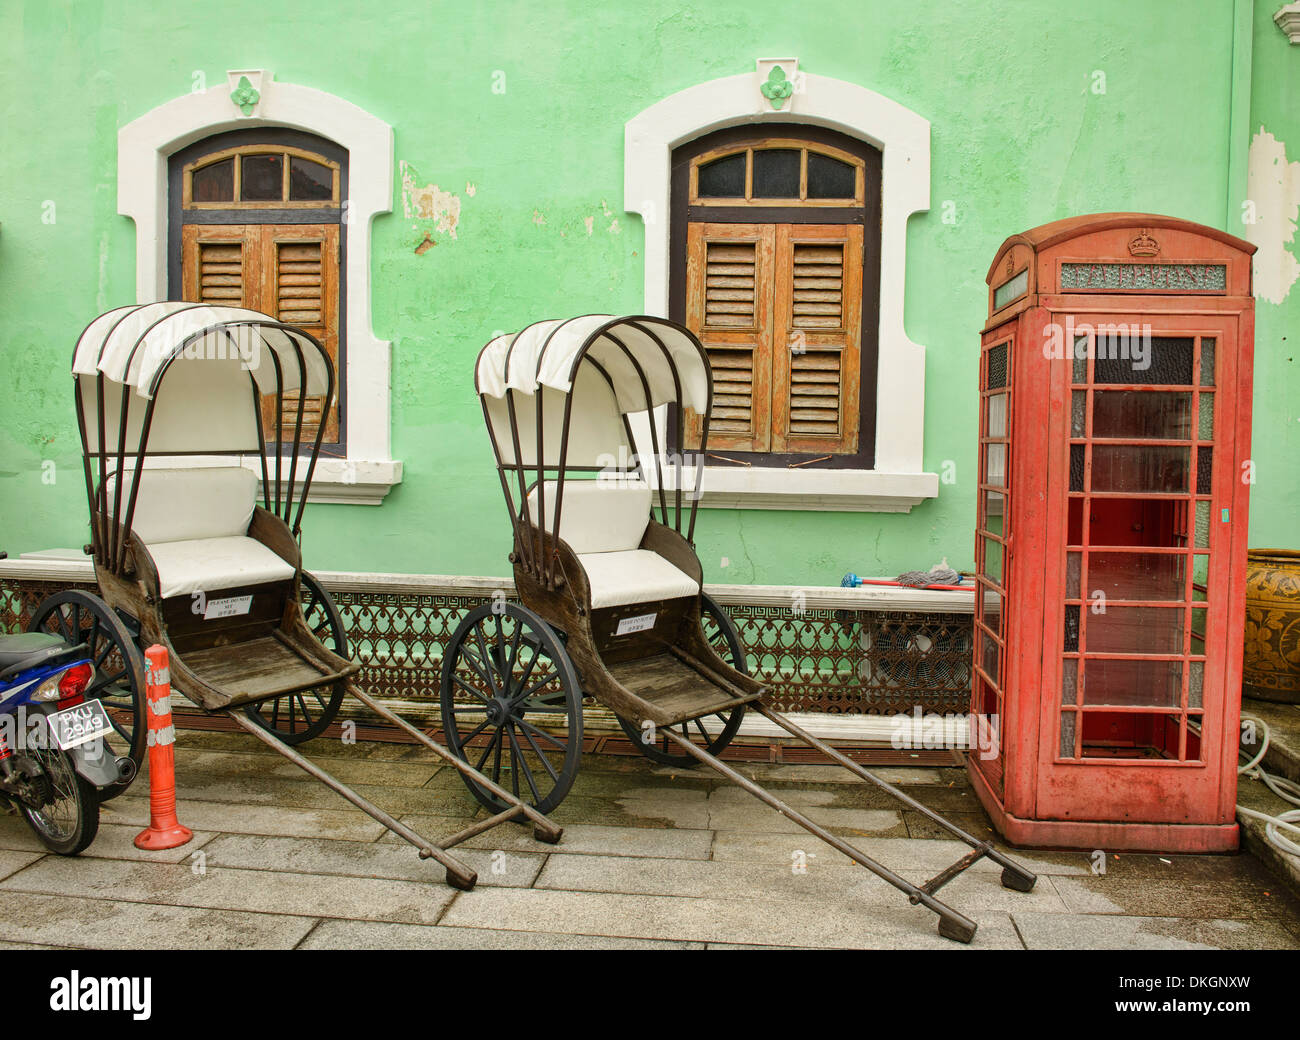 trishaws and phone booth at the Pinang Peranakan Mansion in Georgetown, Penang, Malaysia Stock Photo